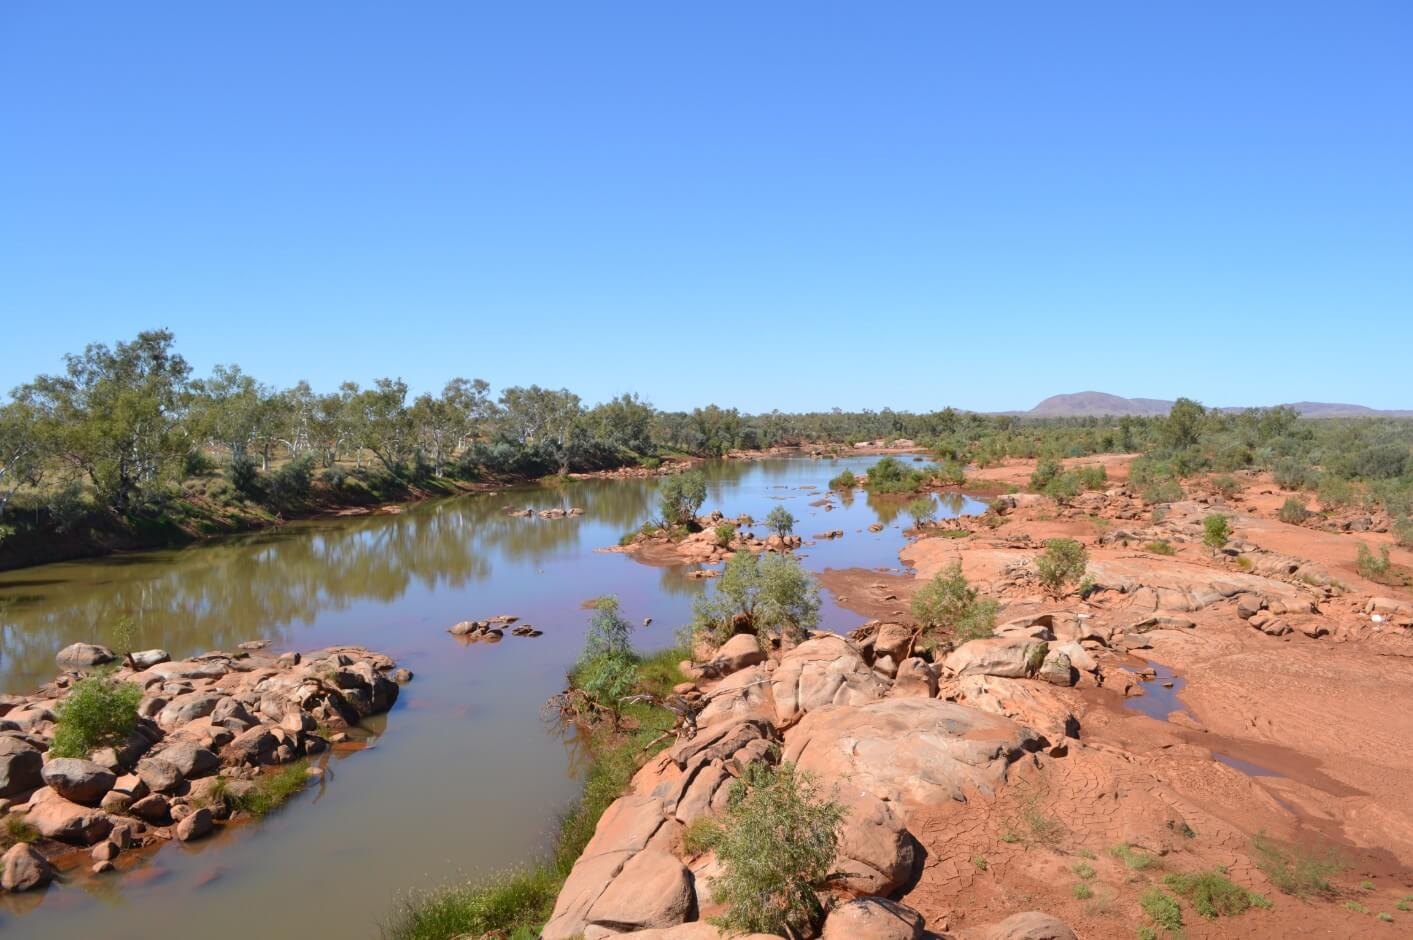 Австралия направление рек. Река Ашбертон в Австралии. Река Дарлинu Австралии. Река Муррей в Австралии. Реки: Муррей, Дарлинг, Купер-крик..